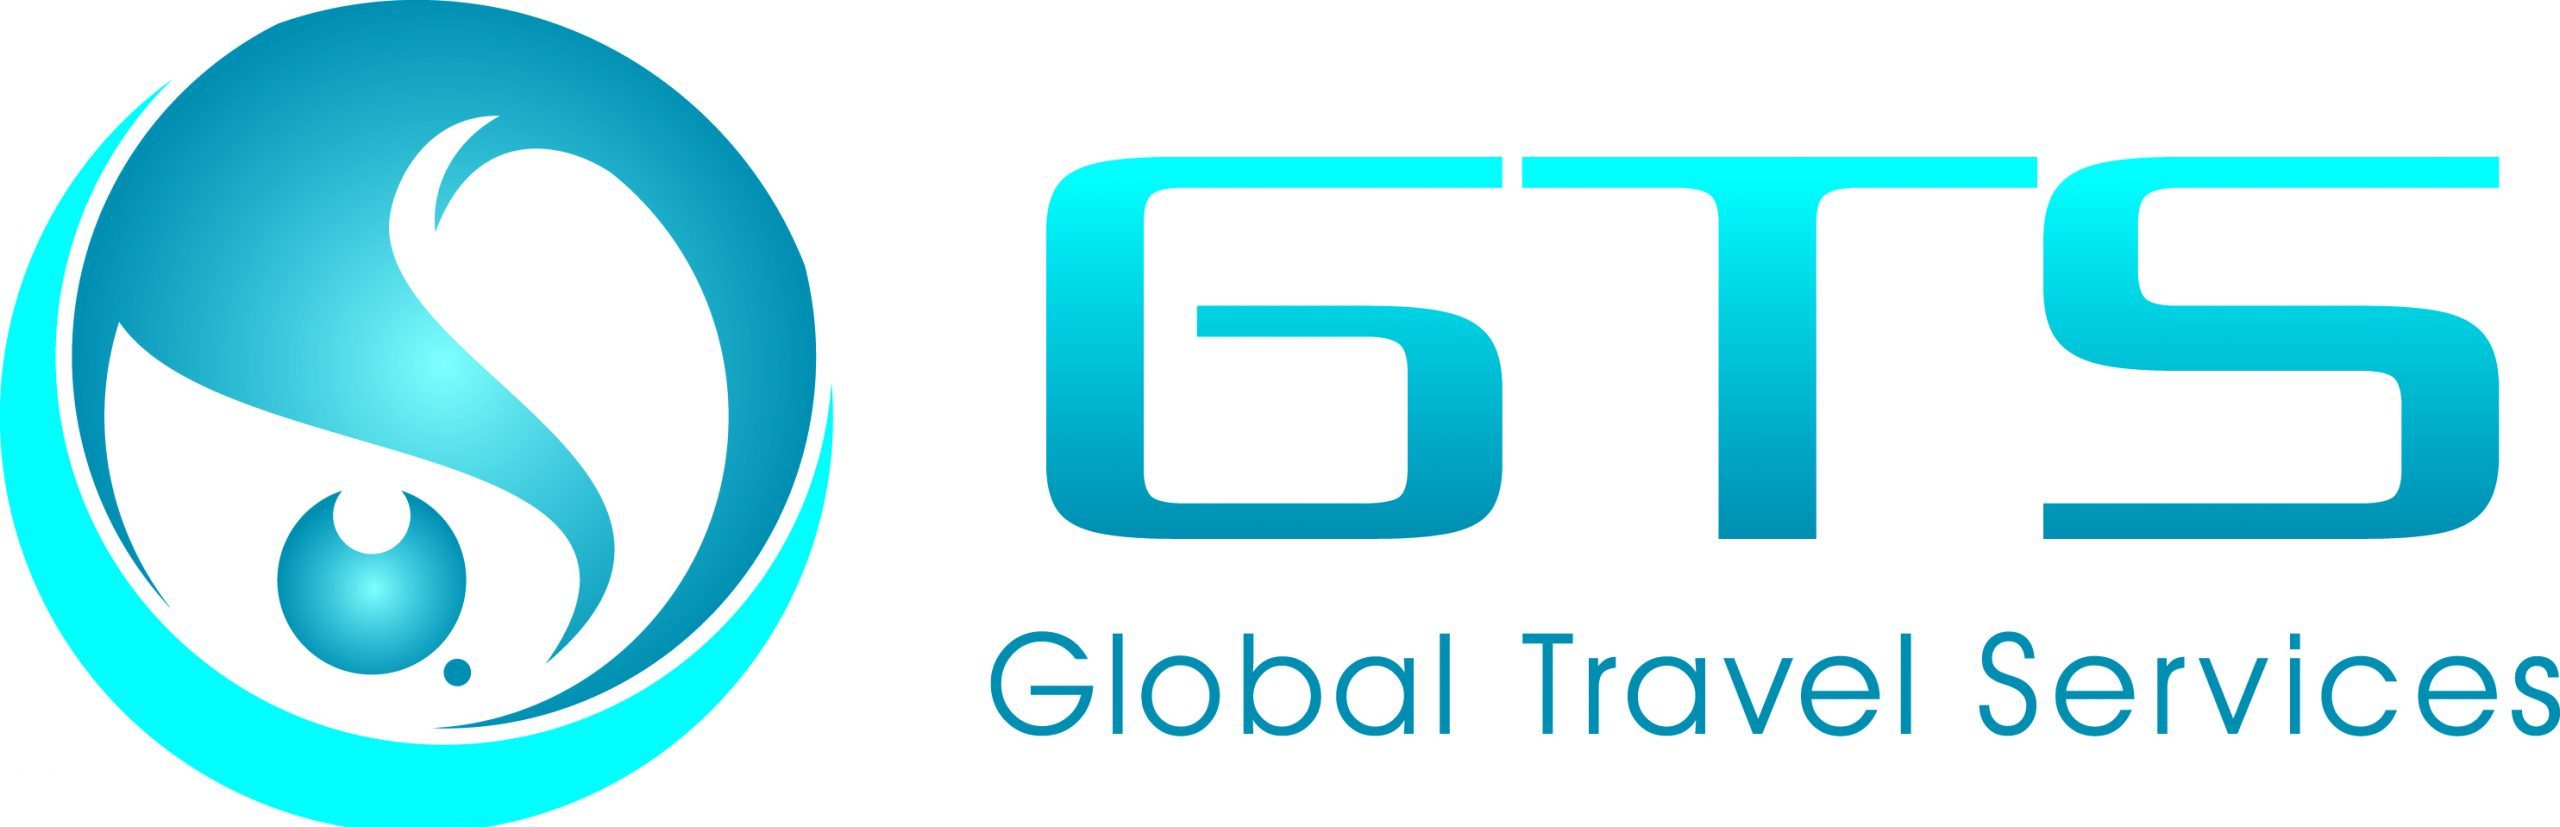 Global travel. Глобал Тревел. Travel services. Глобал Тревел Империал. NCOC logo.